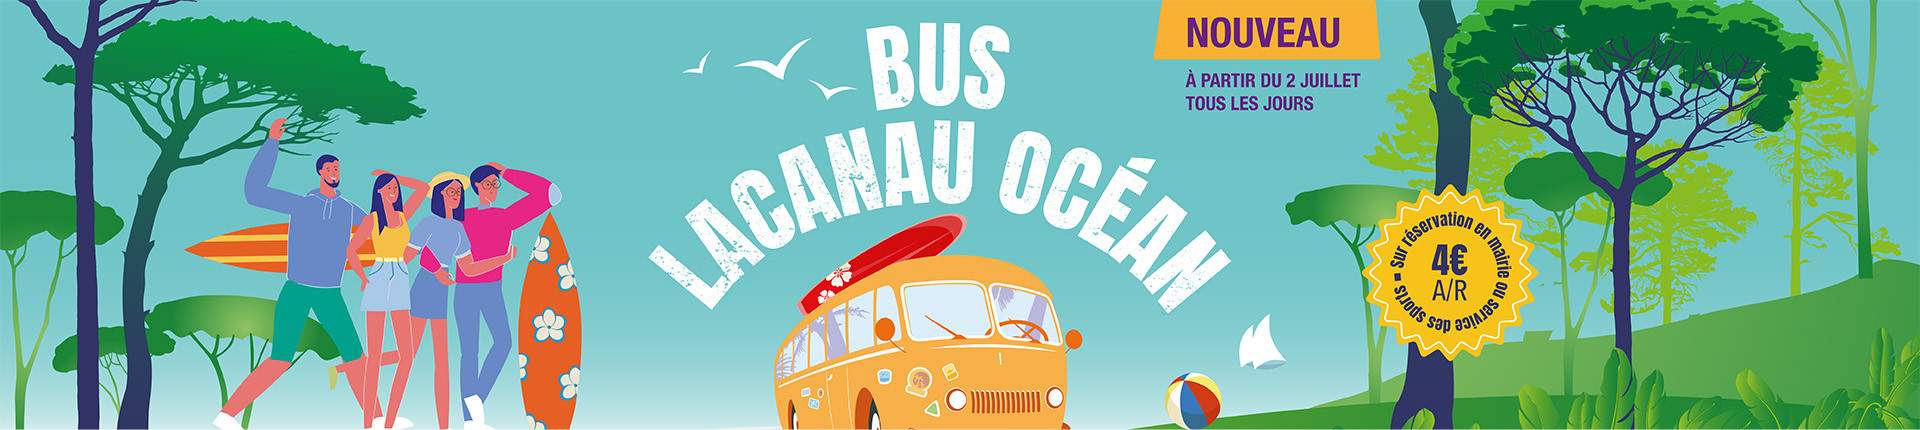 Bus plage Lacanau été 2022